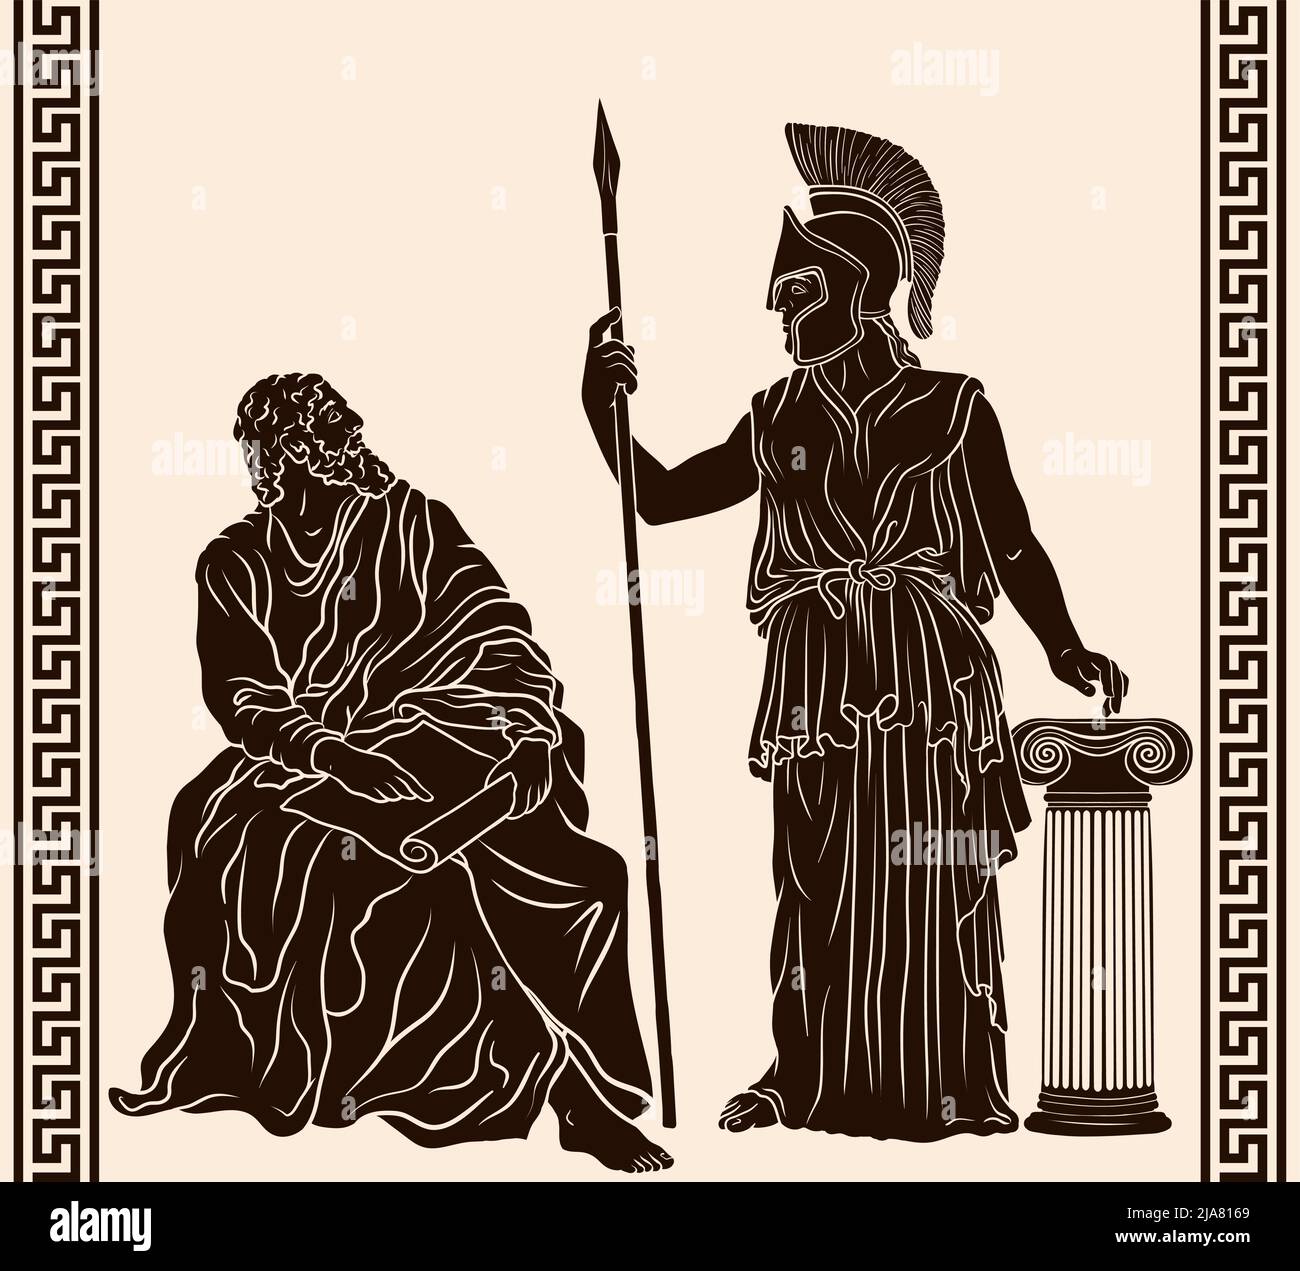 Antico greco antico uomo filosofo salvia siede con papiro nelle sue mani e la dea Pallas Athena in un casco con una lancia in mano si trova accanto alla Th Illustrazione Vettoriale